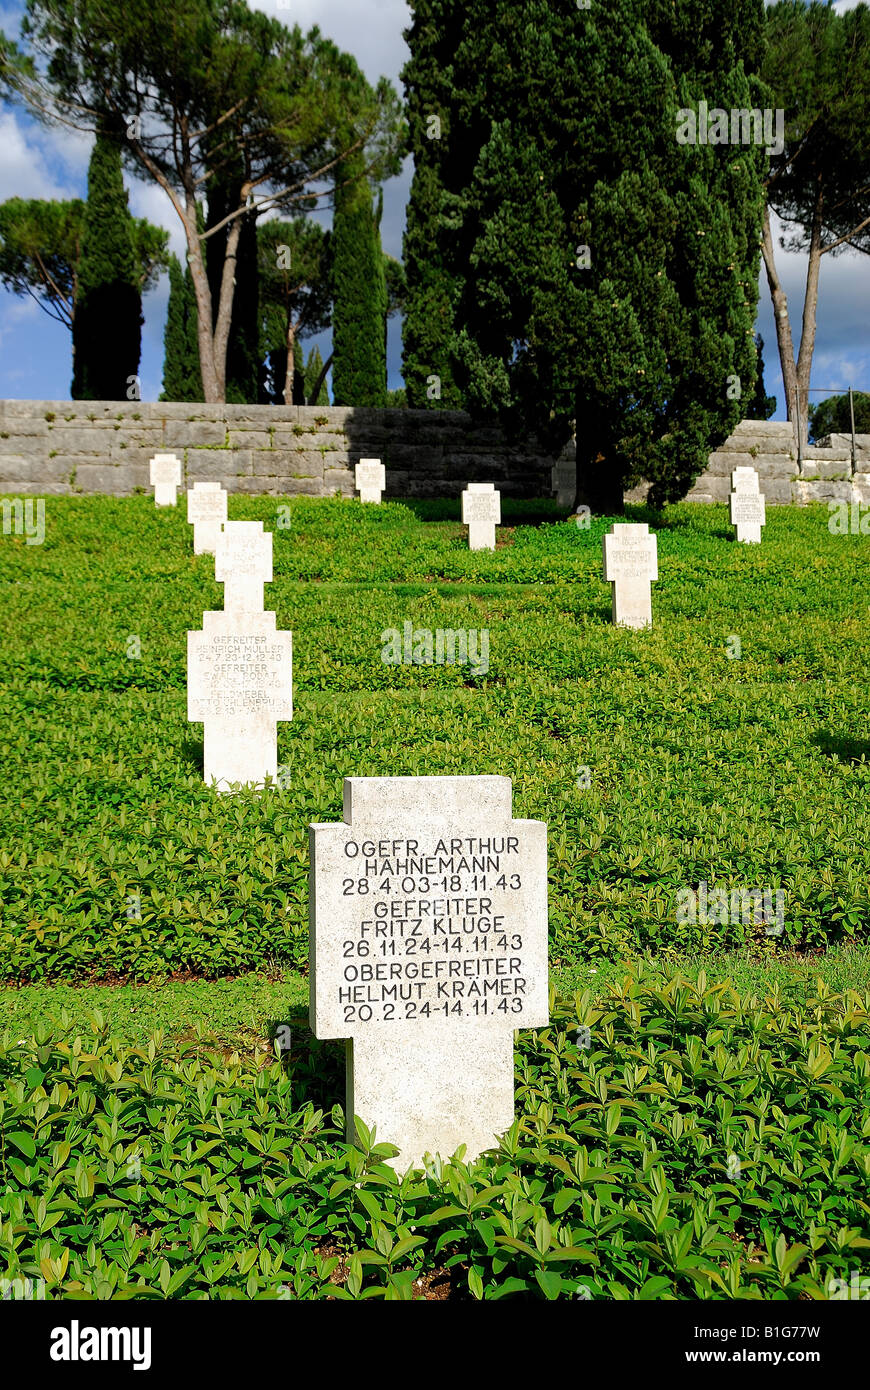 Cimetière de guerre allemand de Cassino.Deuxième Guerre mondiale.dans le cimetière reposent 20057 soldats allemands Banque D'Images